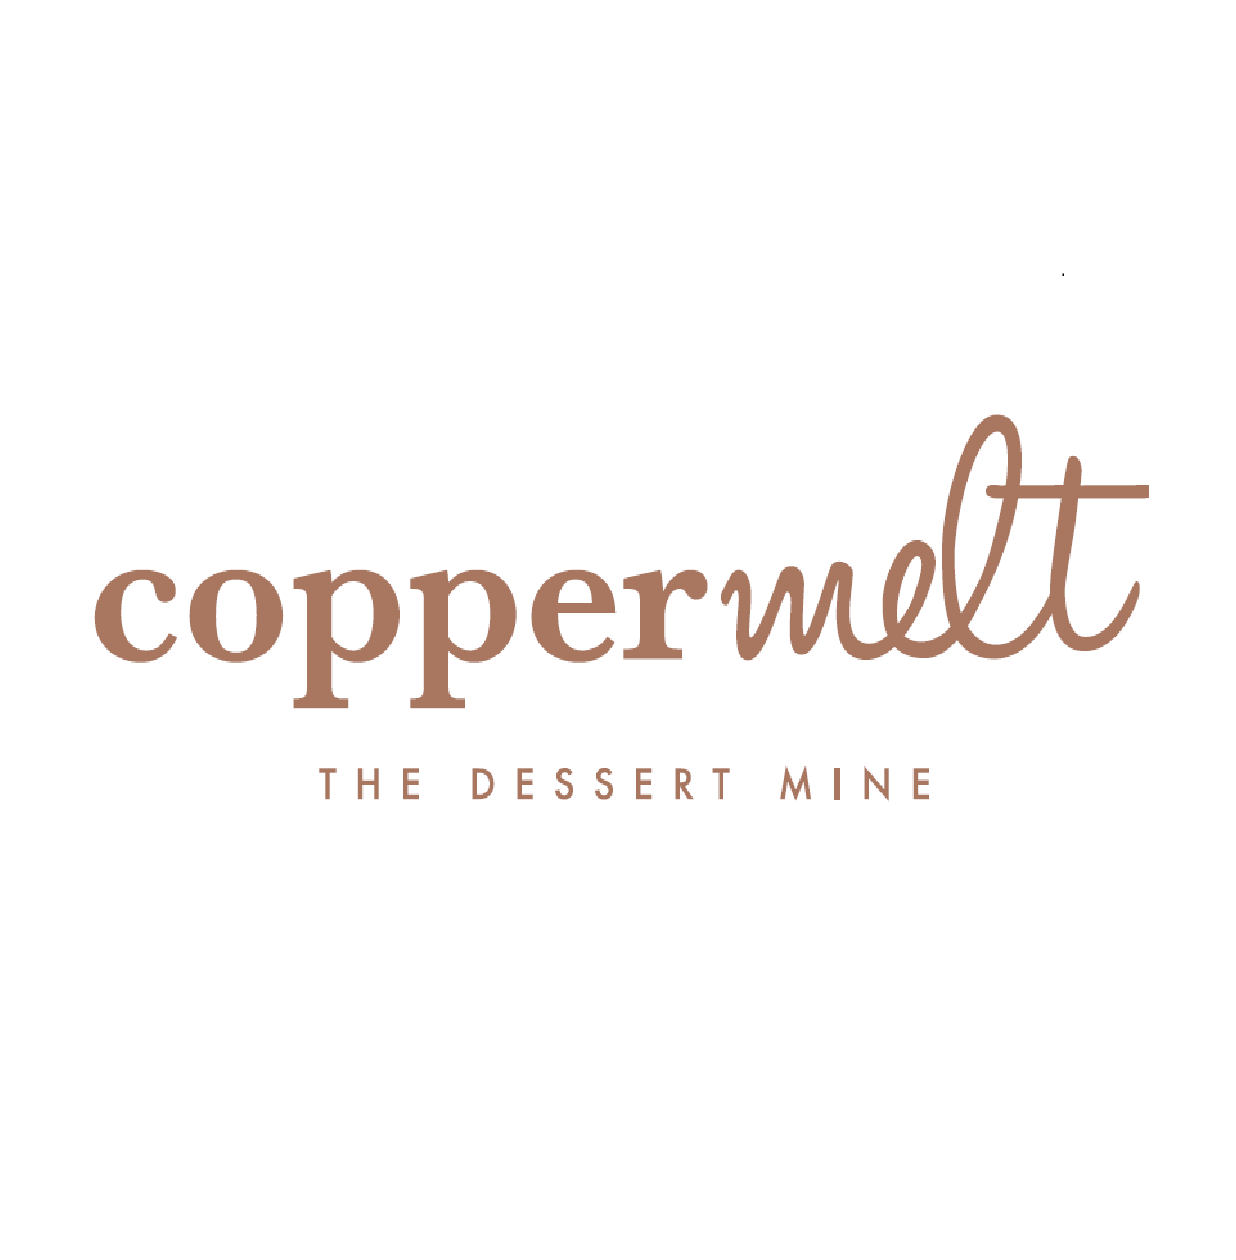 coppermelt